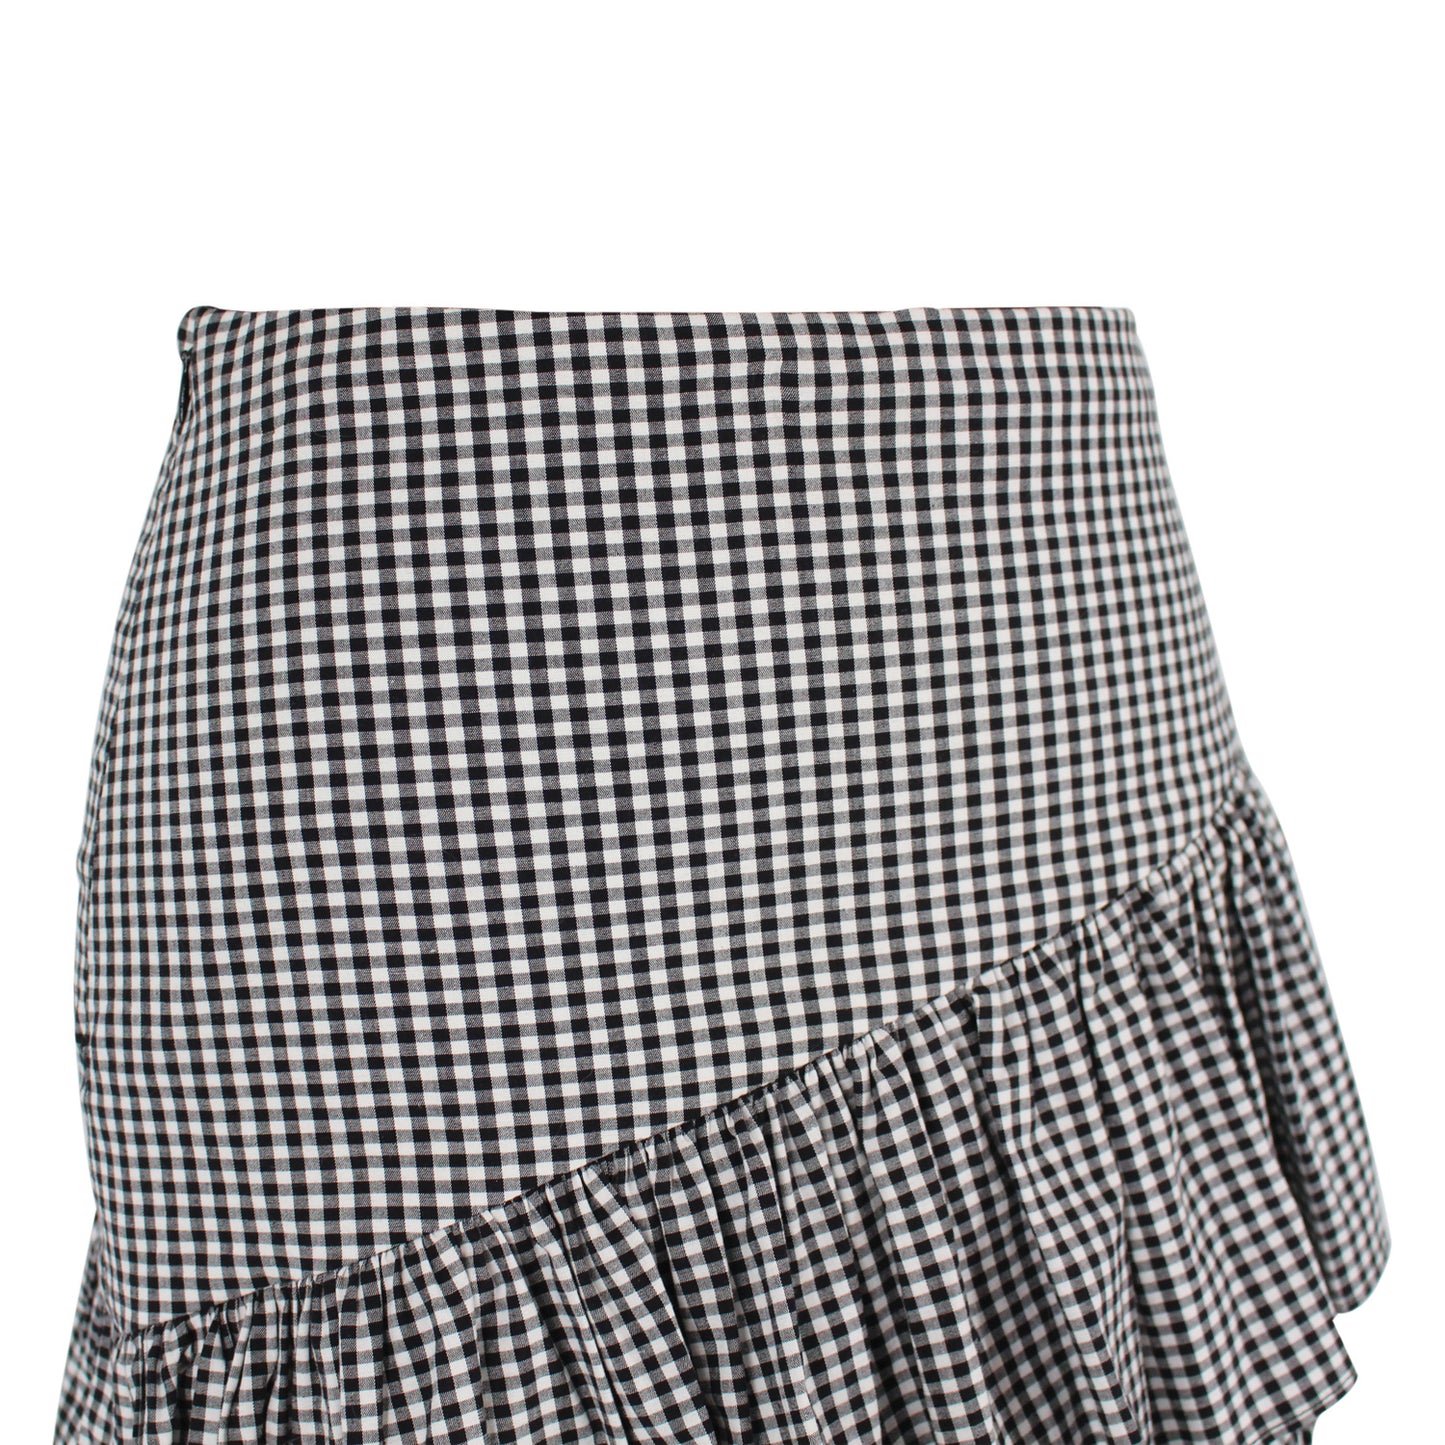 Intermix Marion Ruffle Gingham Skirt